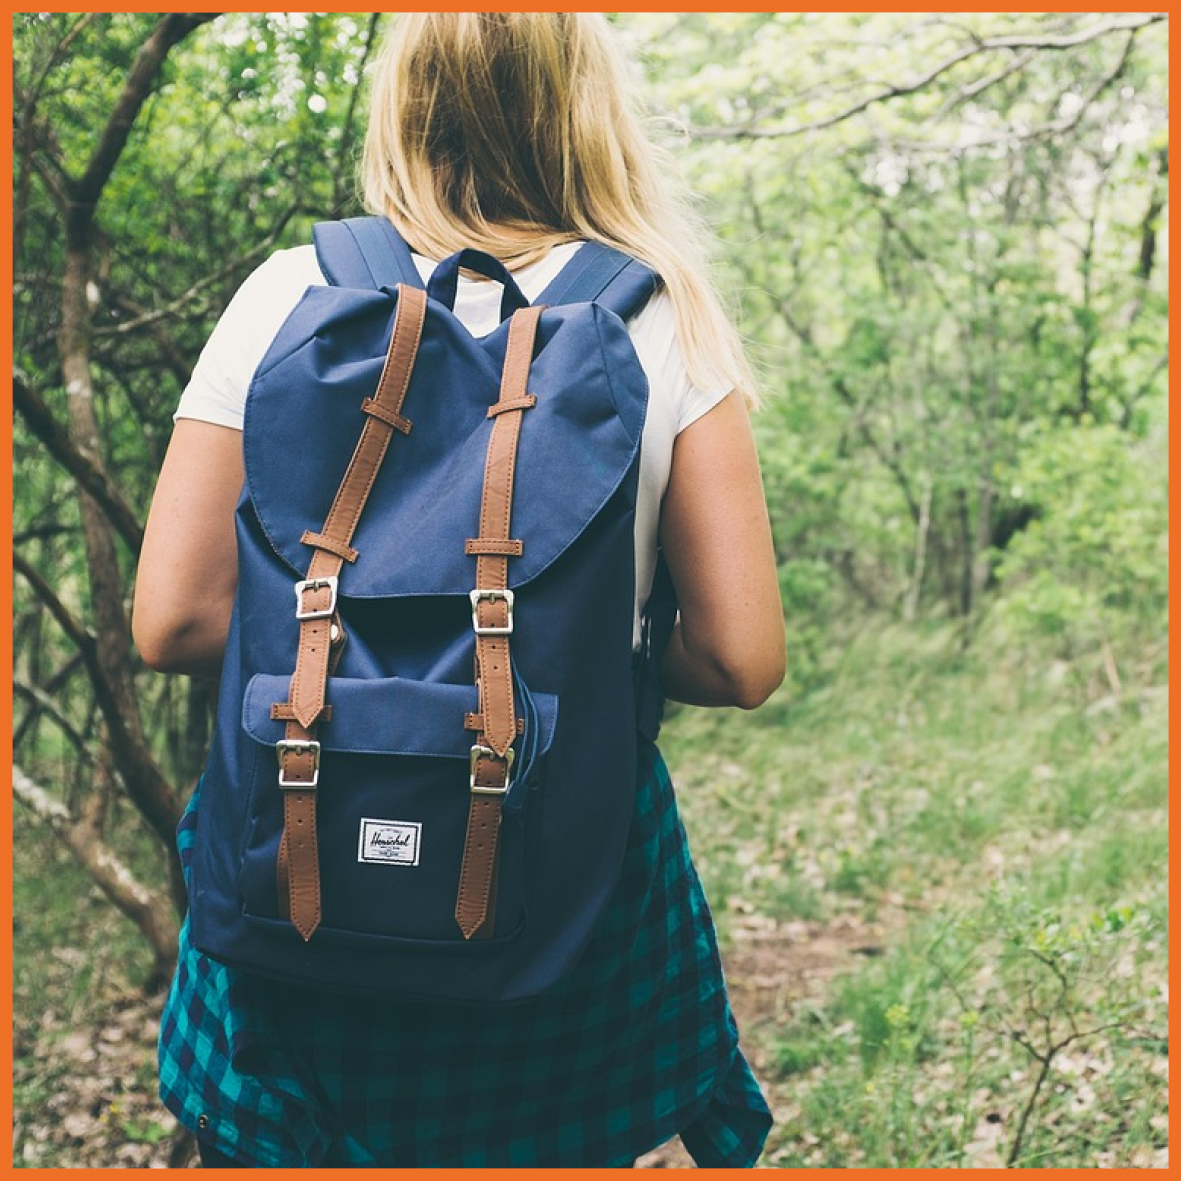 Pige der går med en rygsæk i en skov.